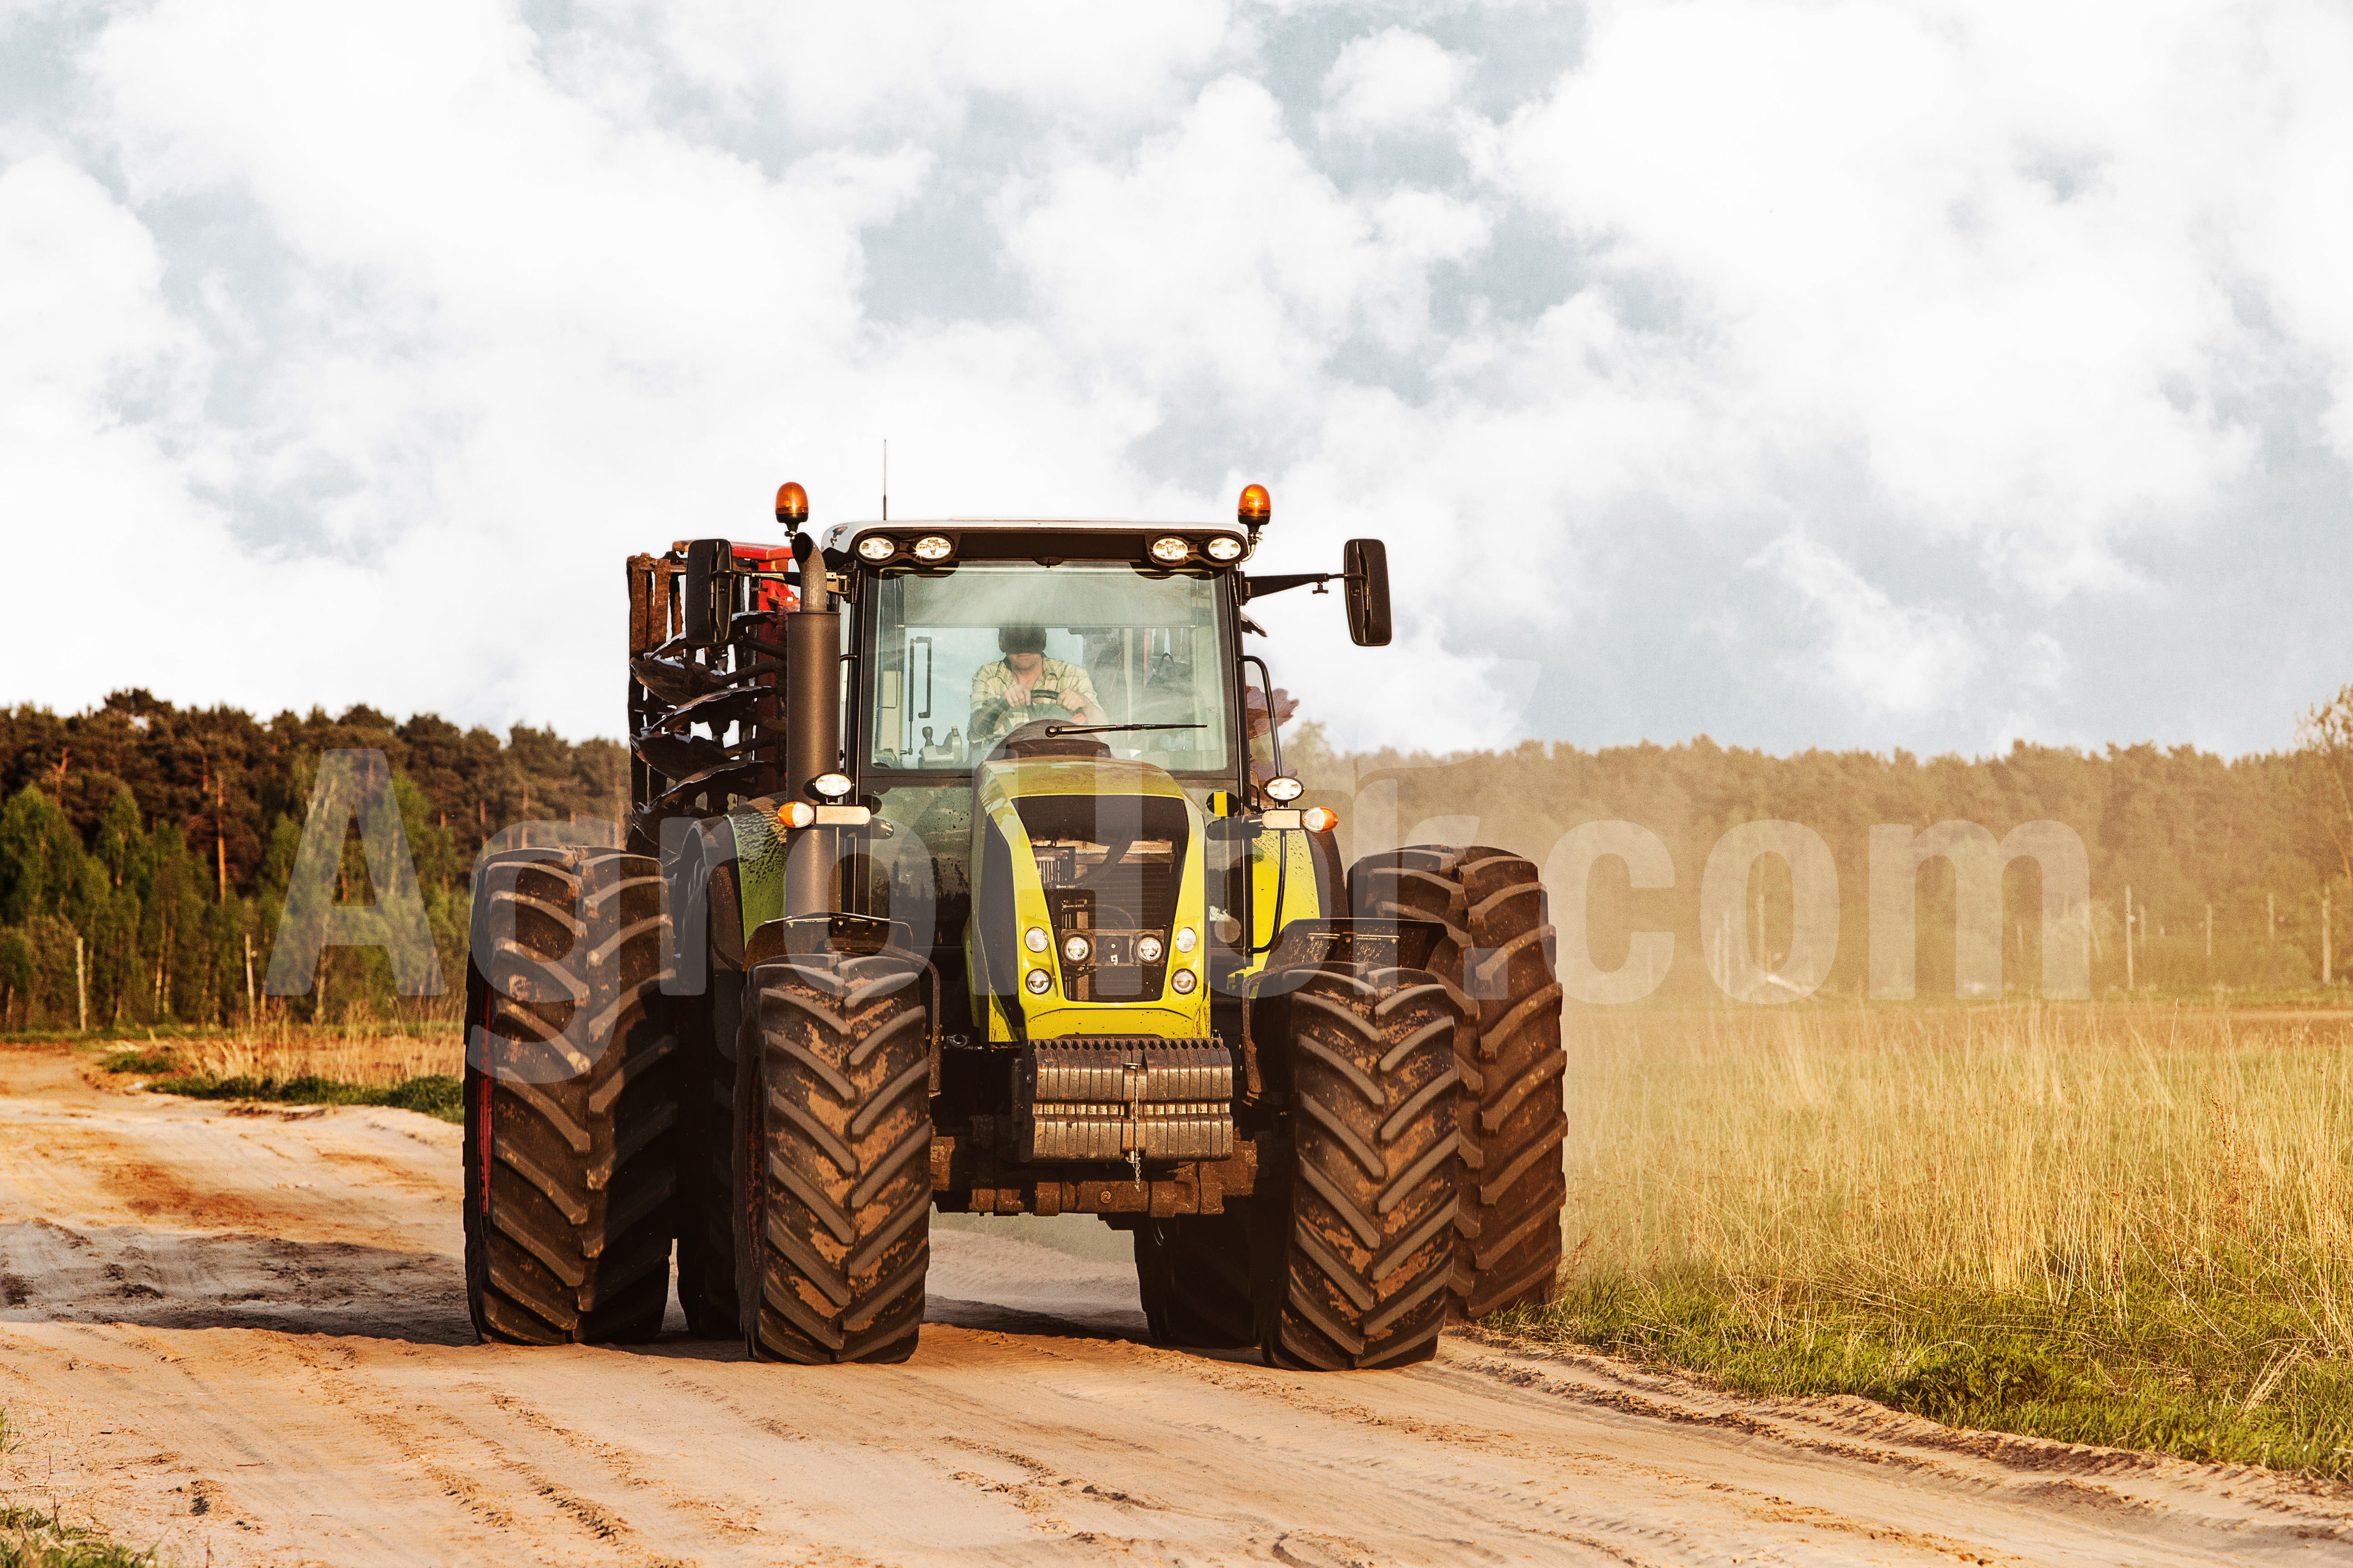 So fahren die meisten professionellen Landwirte ihre Traktoren auf den Feldern!